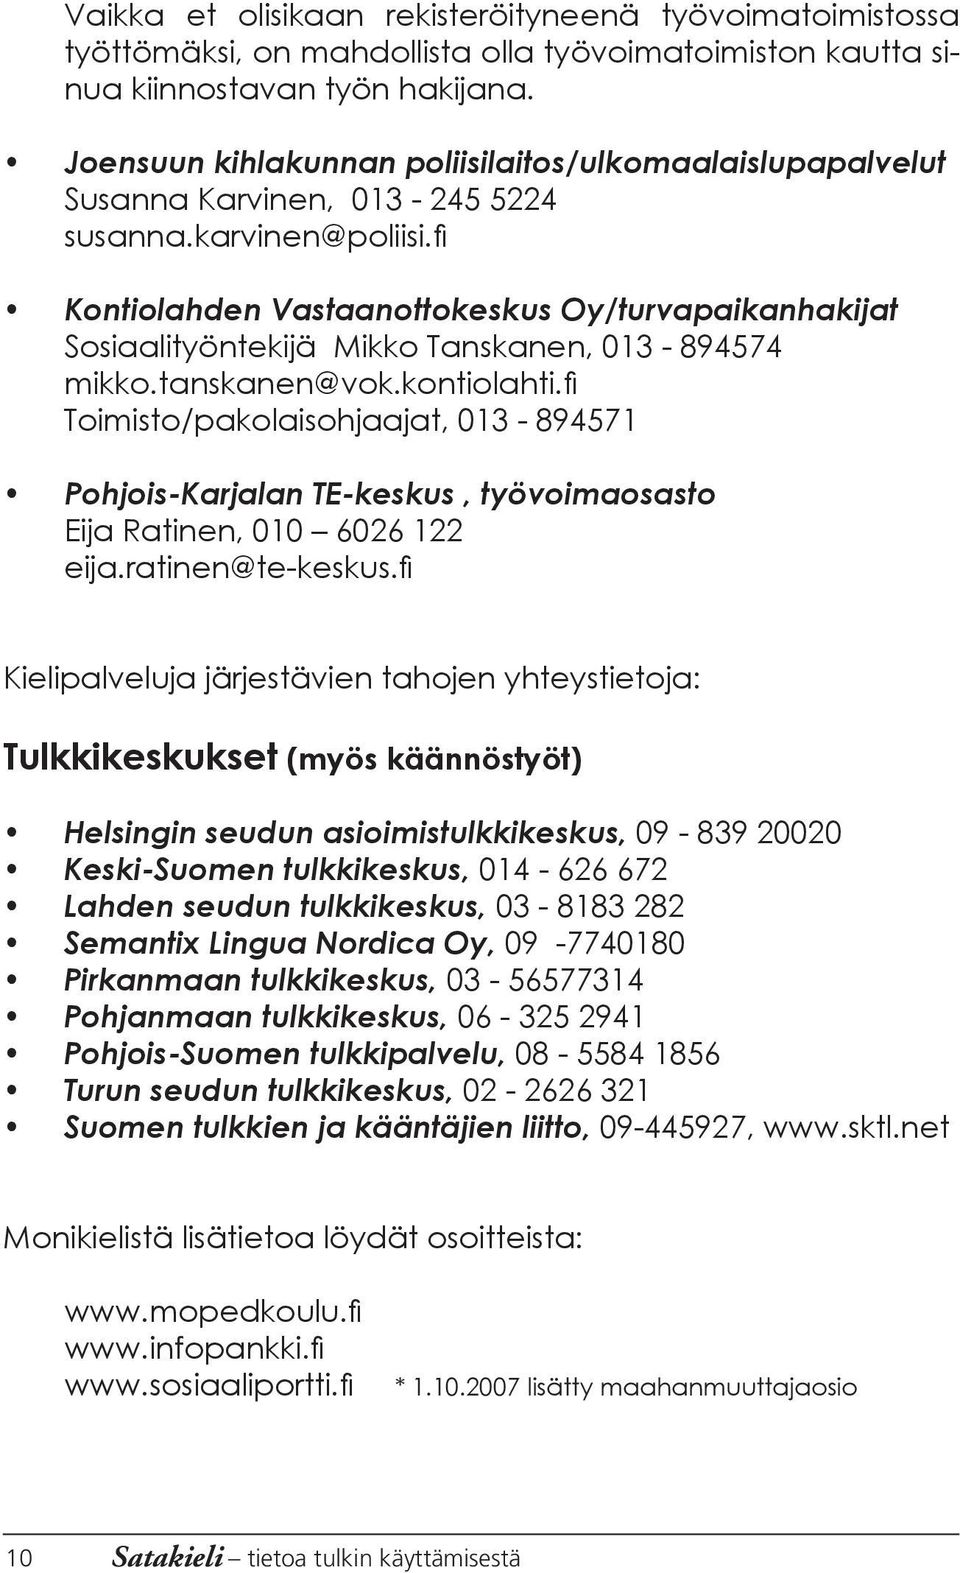 fi Kontiolahden Vastaanottokeskus Oy/turvapaikanhakijat Sosiaalityöntekijä Mikko Tanskanen, 013-894574 mikko.tanskanen@vok.kontiolahti.